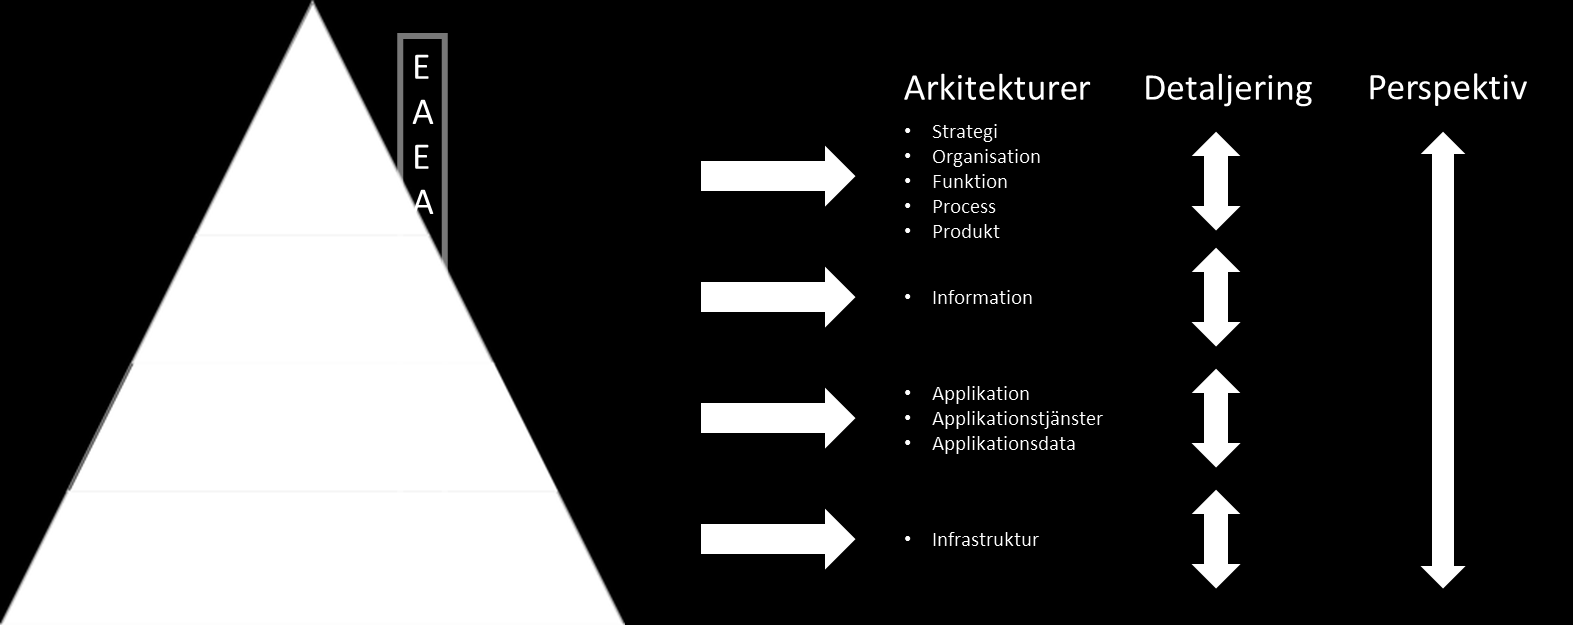 Utgångspunkten för att beskriva ett lärosäte är att definiera en struktur där sambanden mellan de olika arkitekturerna inom en verksamhet kan beskrivas.